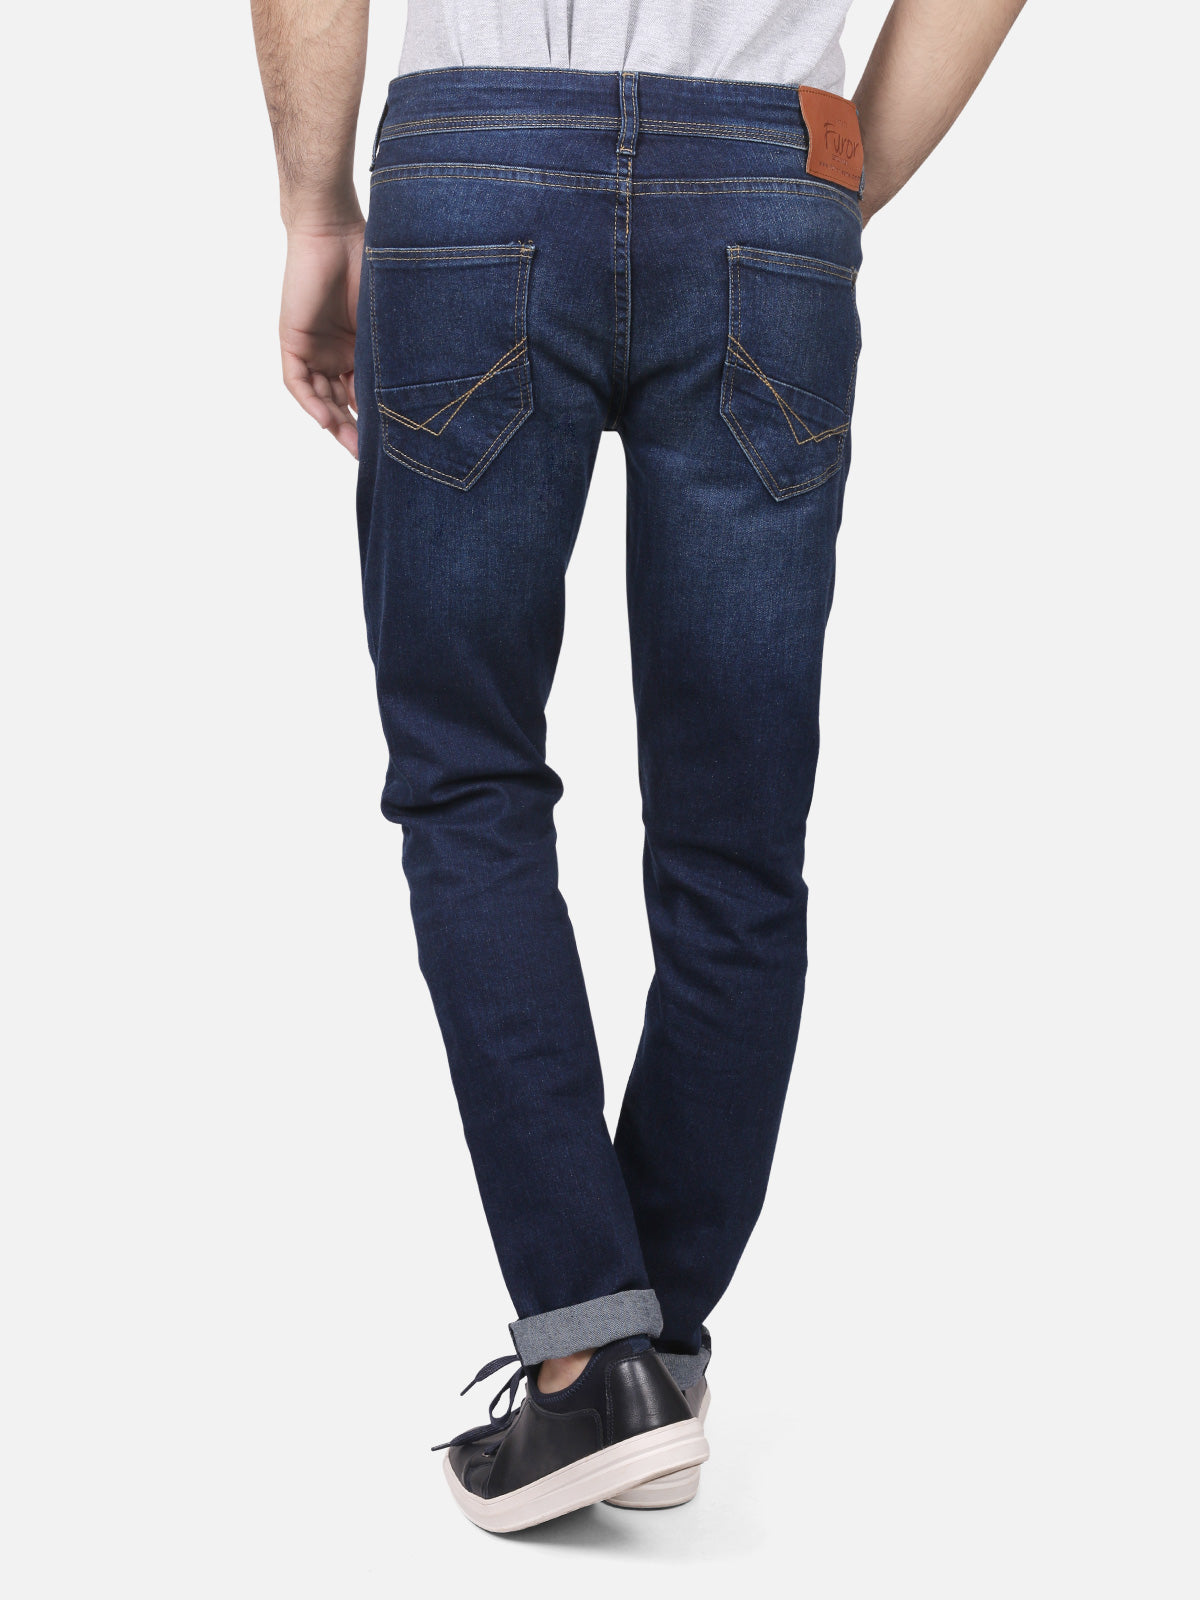 Men's Blue Denim Jeans - FMBP18-002